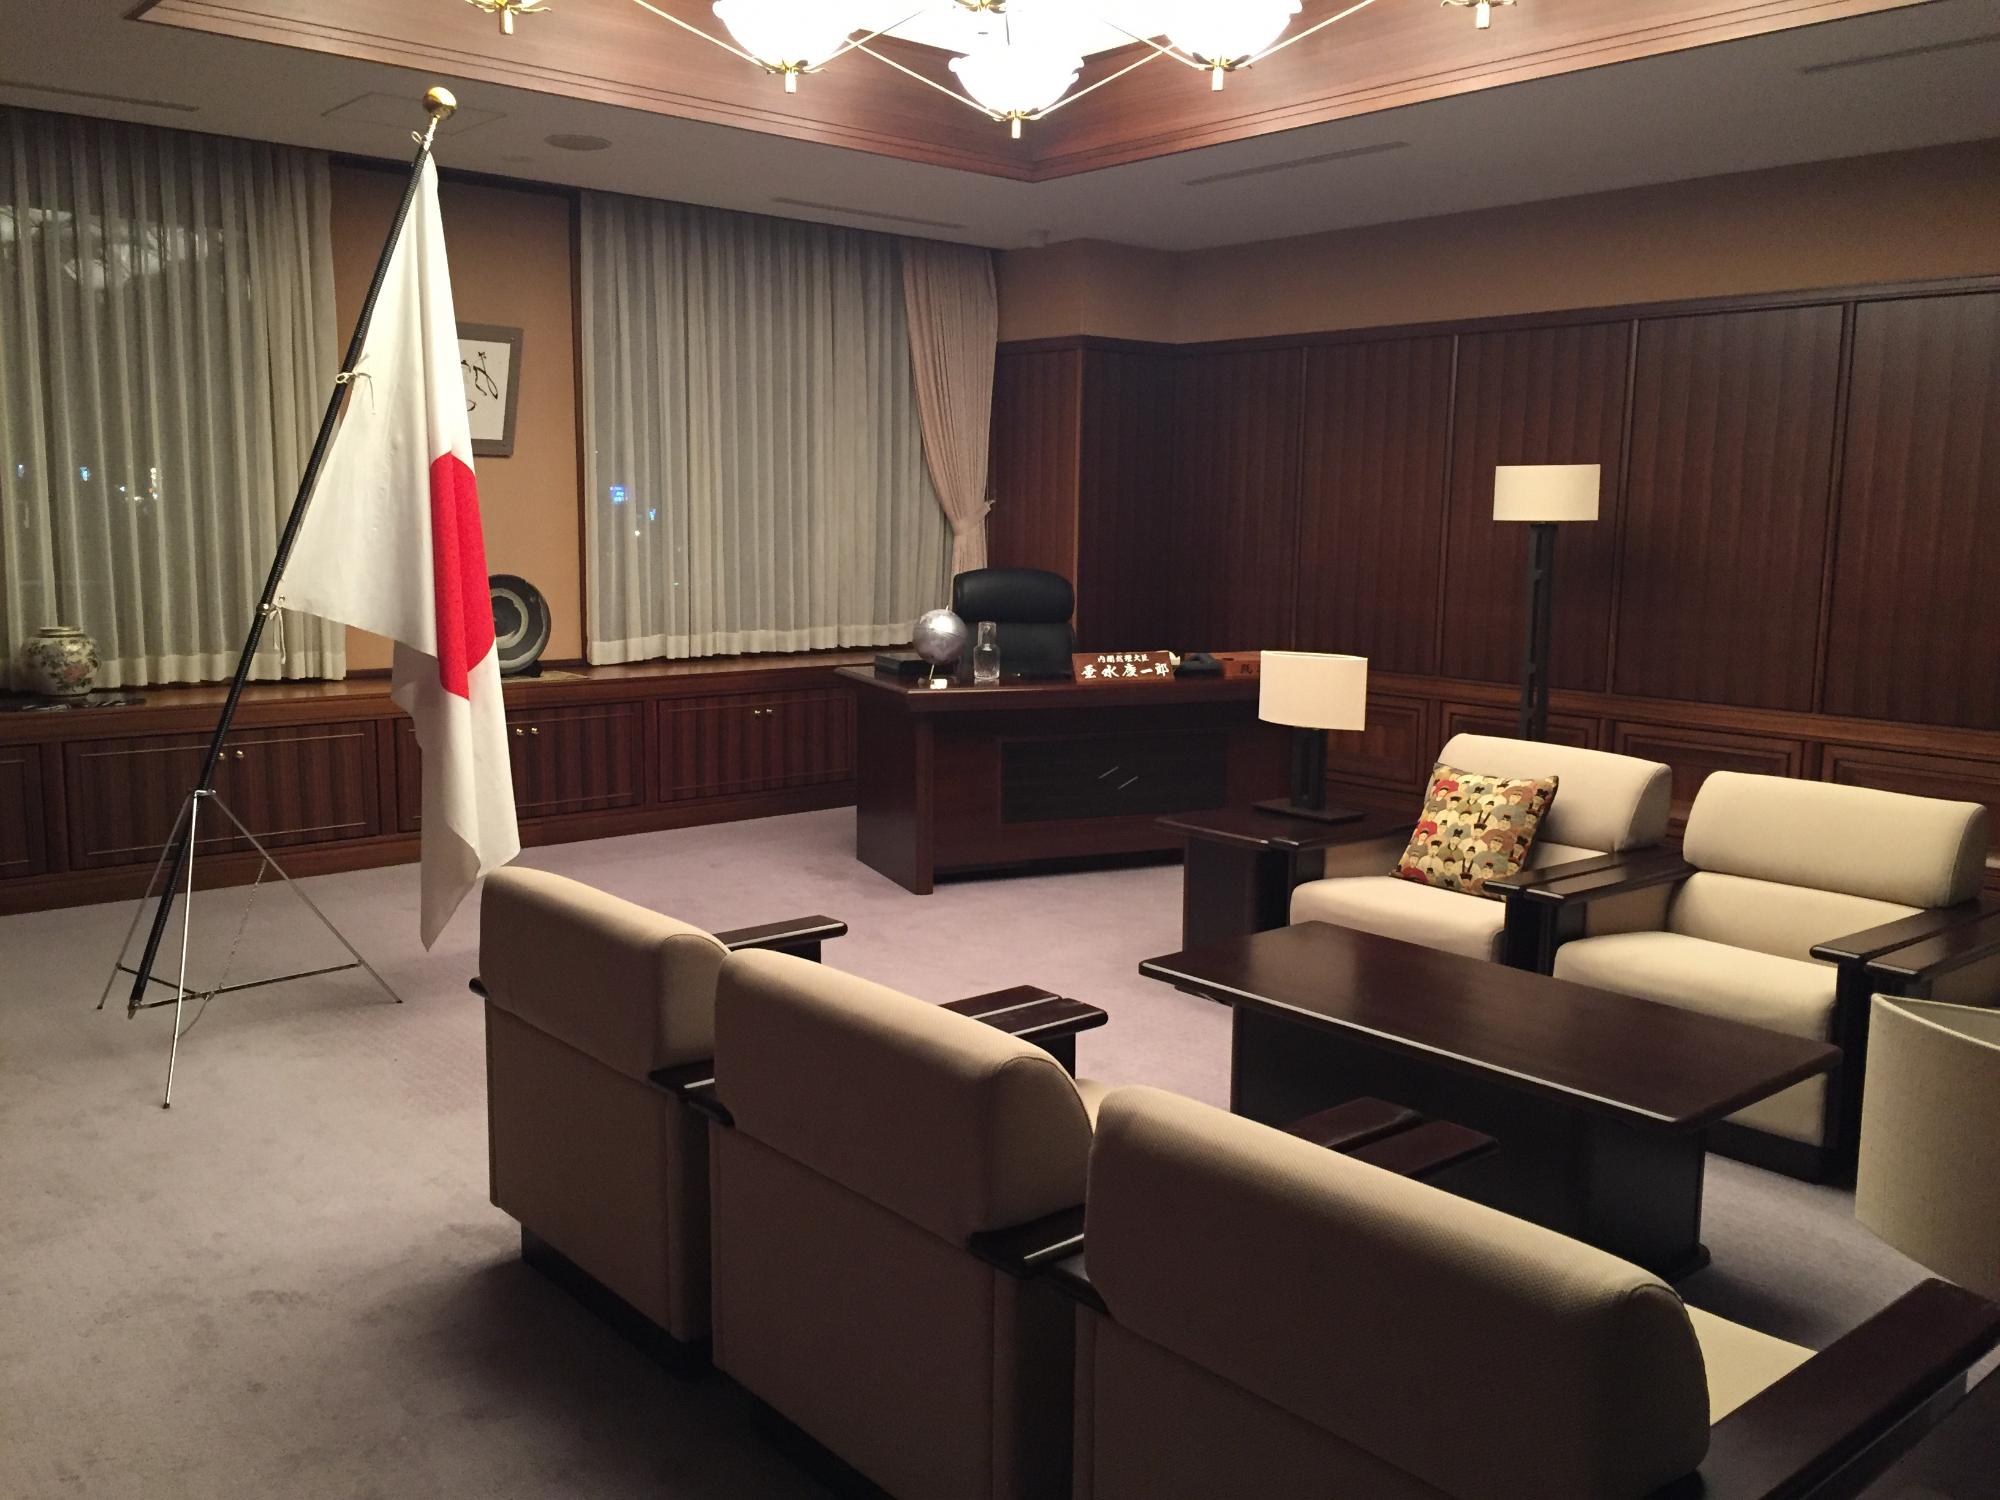 内閣総理大臣の机と椅子が室内奥にあり、左側に日の丸の国旗、右前方に応接セットのソファーと机が置かれている室内の写真